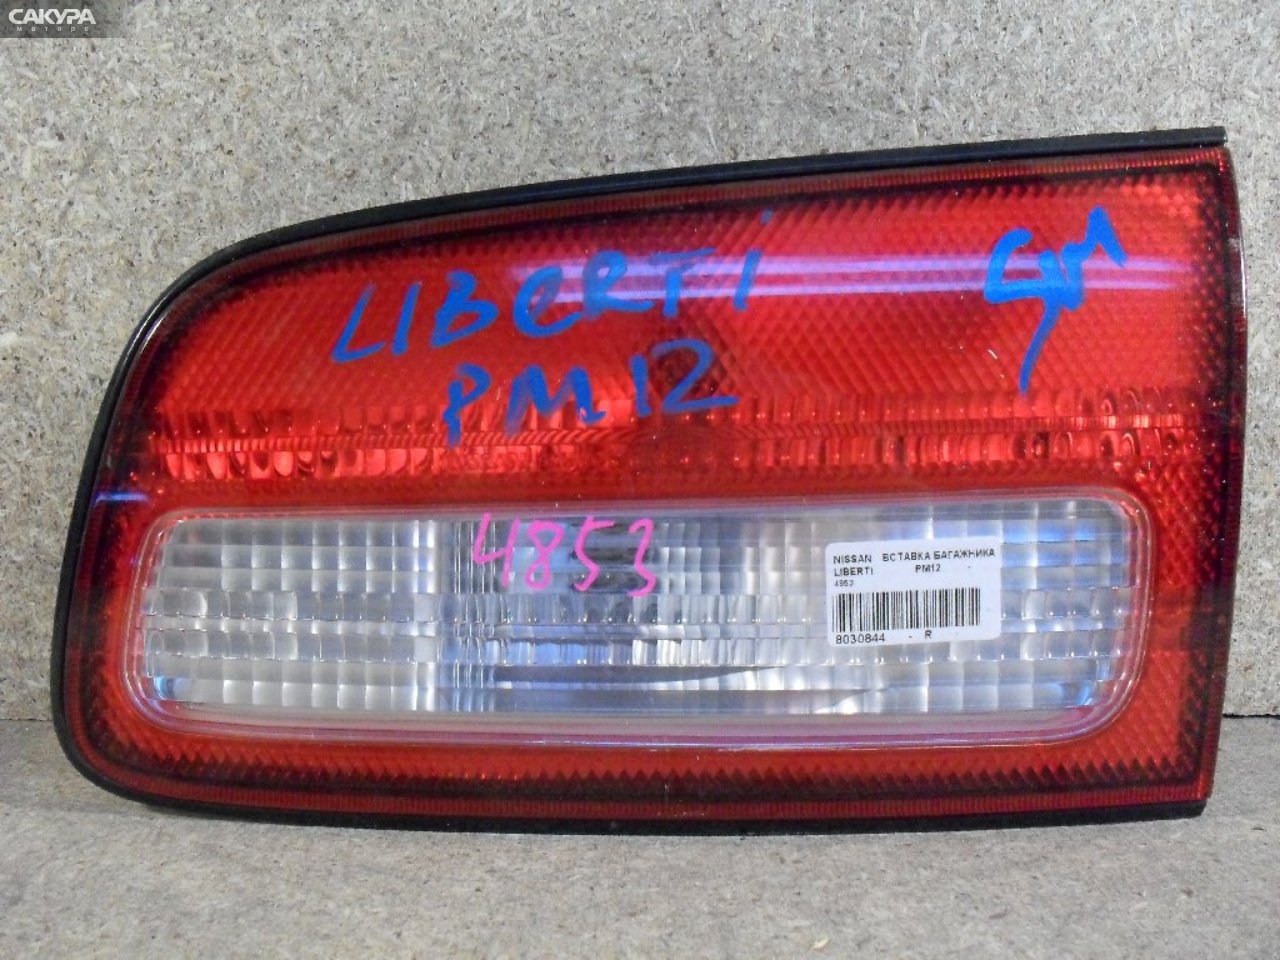 Фонарь вставка багажника правый Nissan Liberty PM12 4853: купить в Сакура Абакан.